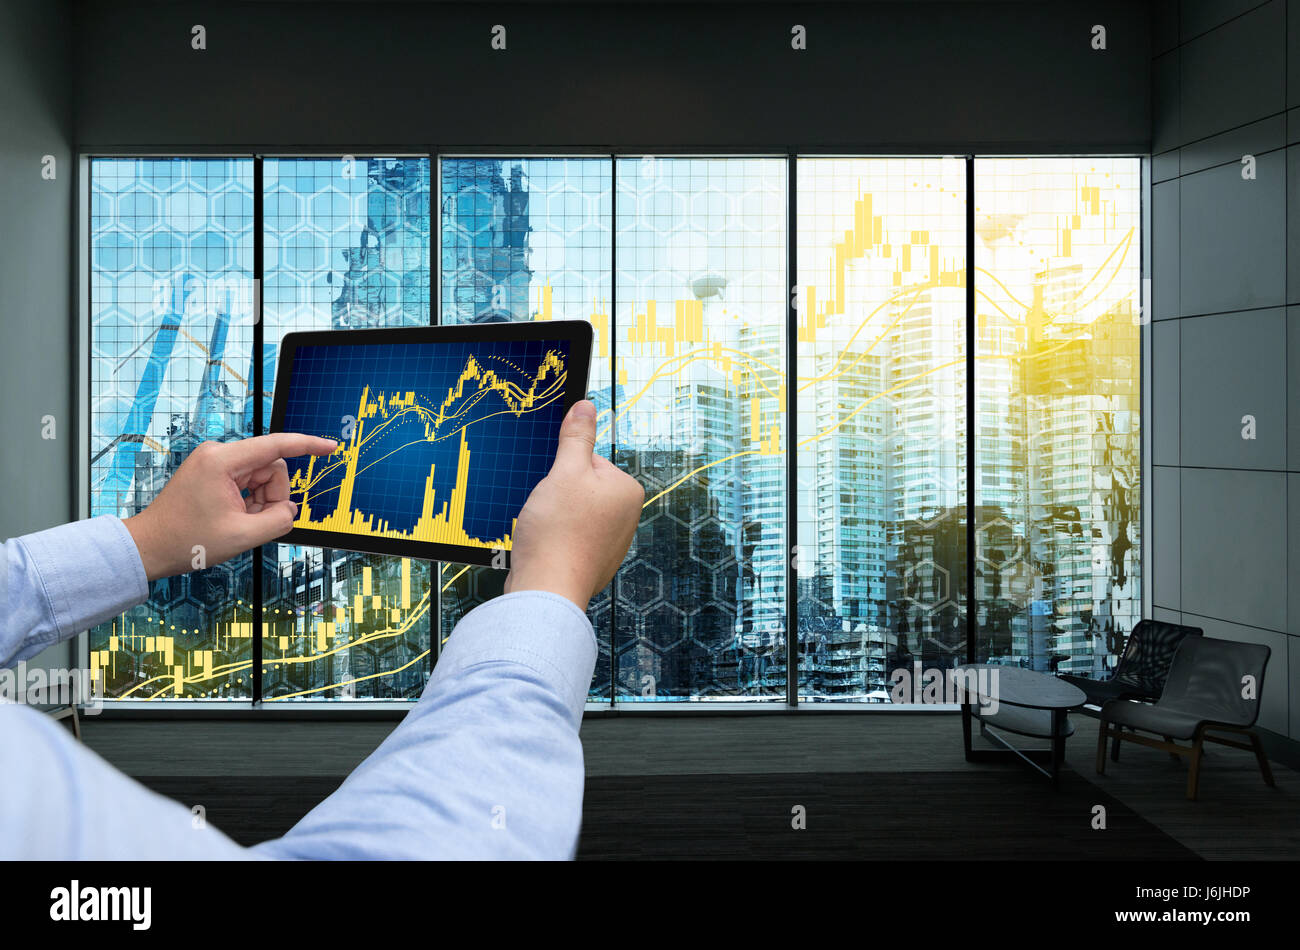 La technologie de l'Internet financier Investissement Fintech Concept. Man hand holding tablette avec écran graphique graphique bourse .Fenêtre affichant smart building Banque D'Images